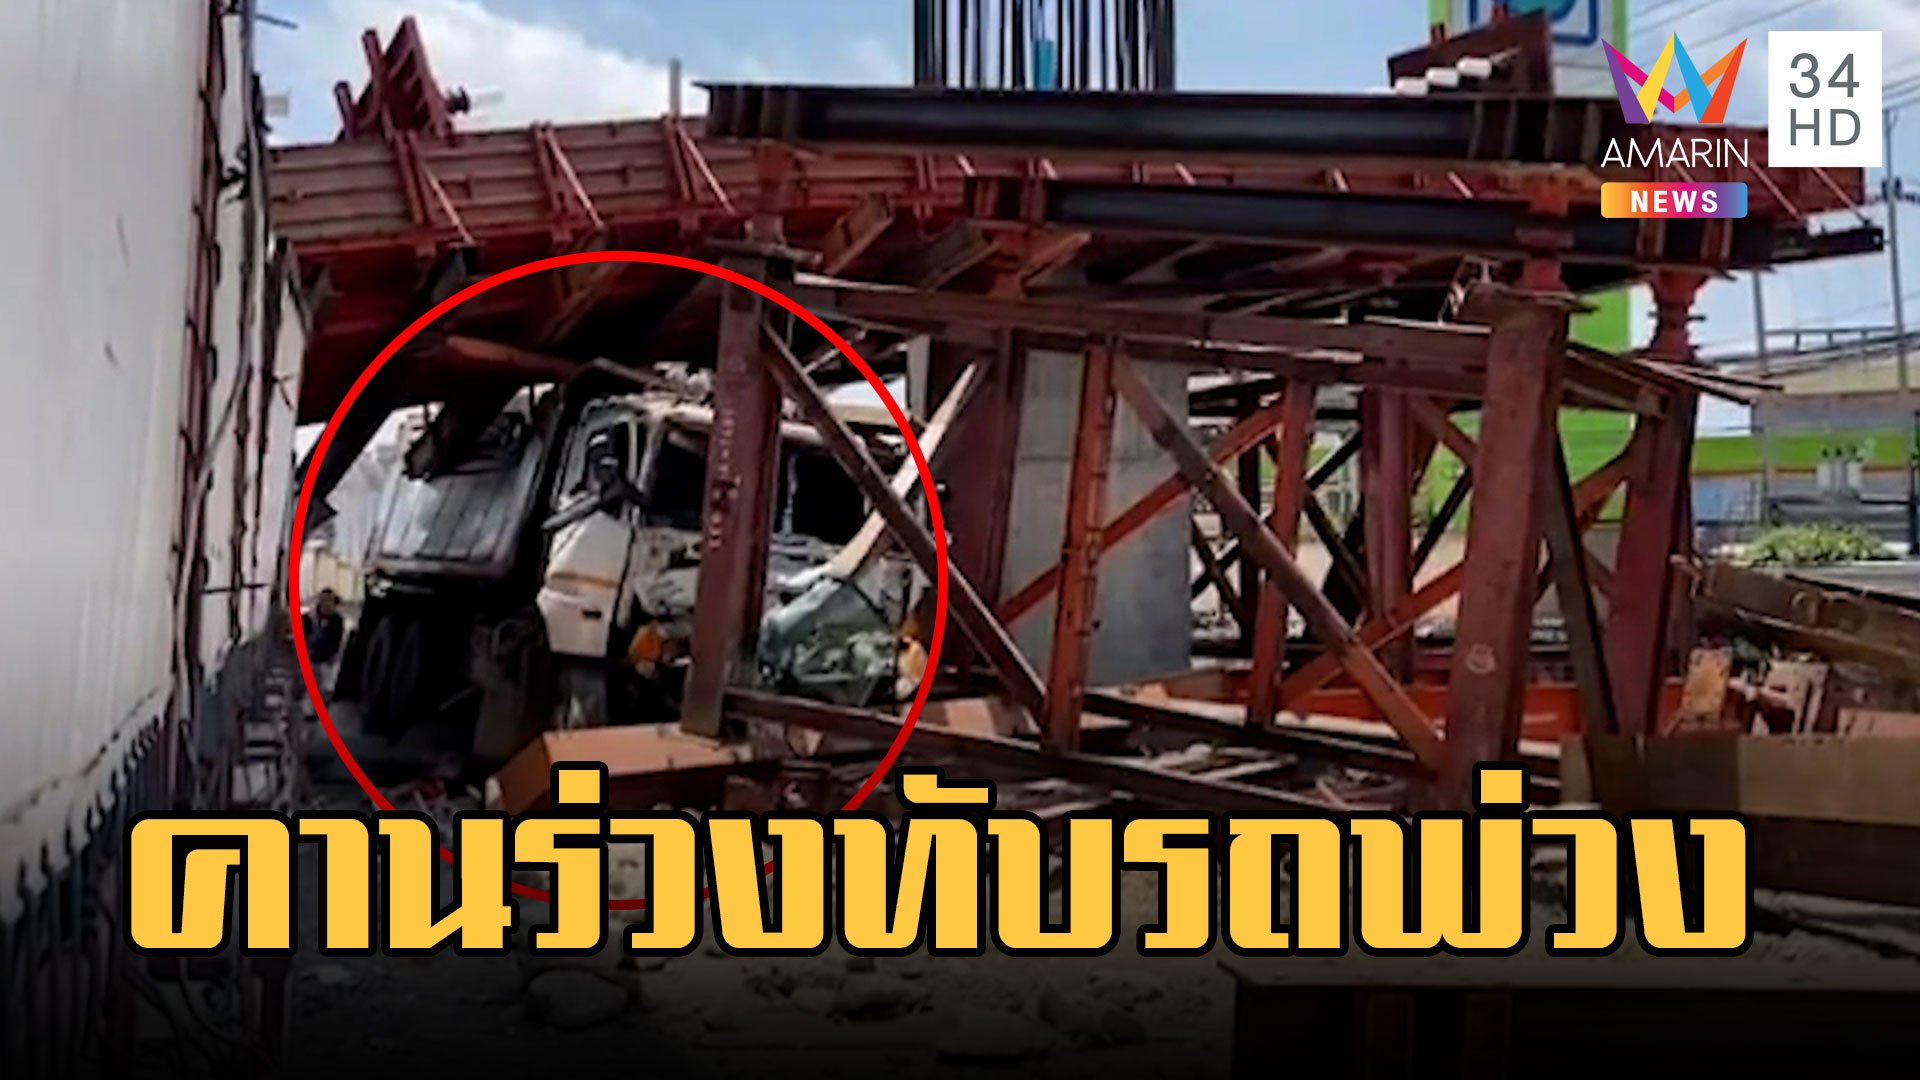 รถพ่วงเสียหลักชนคานเหล็กก่อสร้างทางยกระดับ "พระราม 2" | ข่าวเที่ยงอมรินทร์ | 27 มี.ค. 66 | AMARIN TVHD34